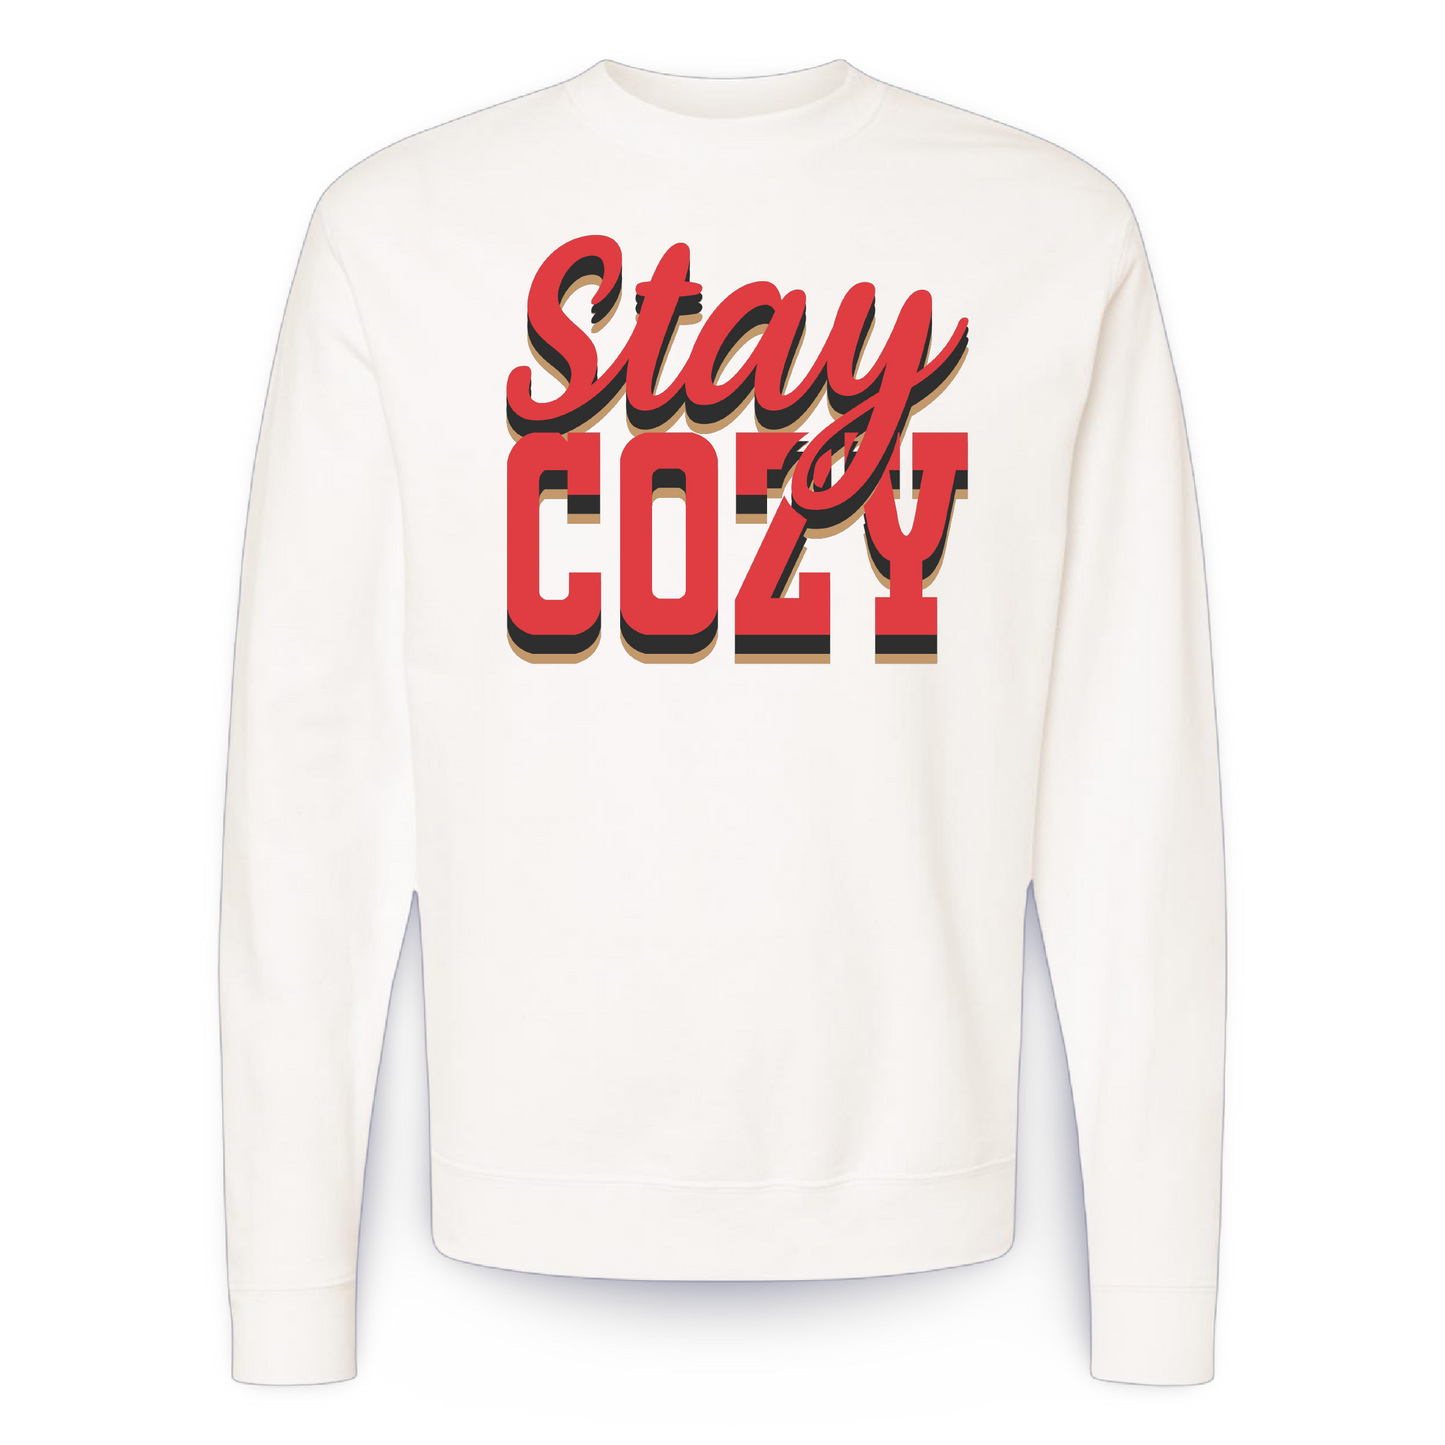 Stay Cozy (crewneck sweatshirt)